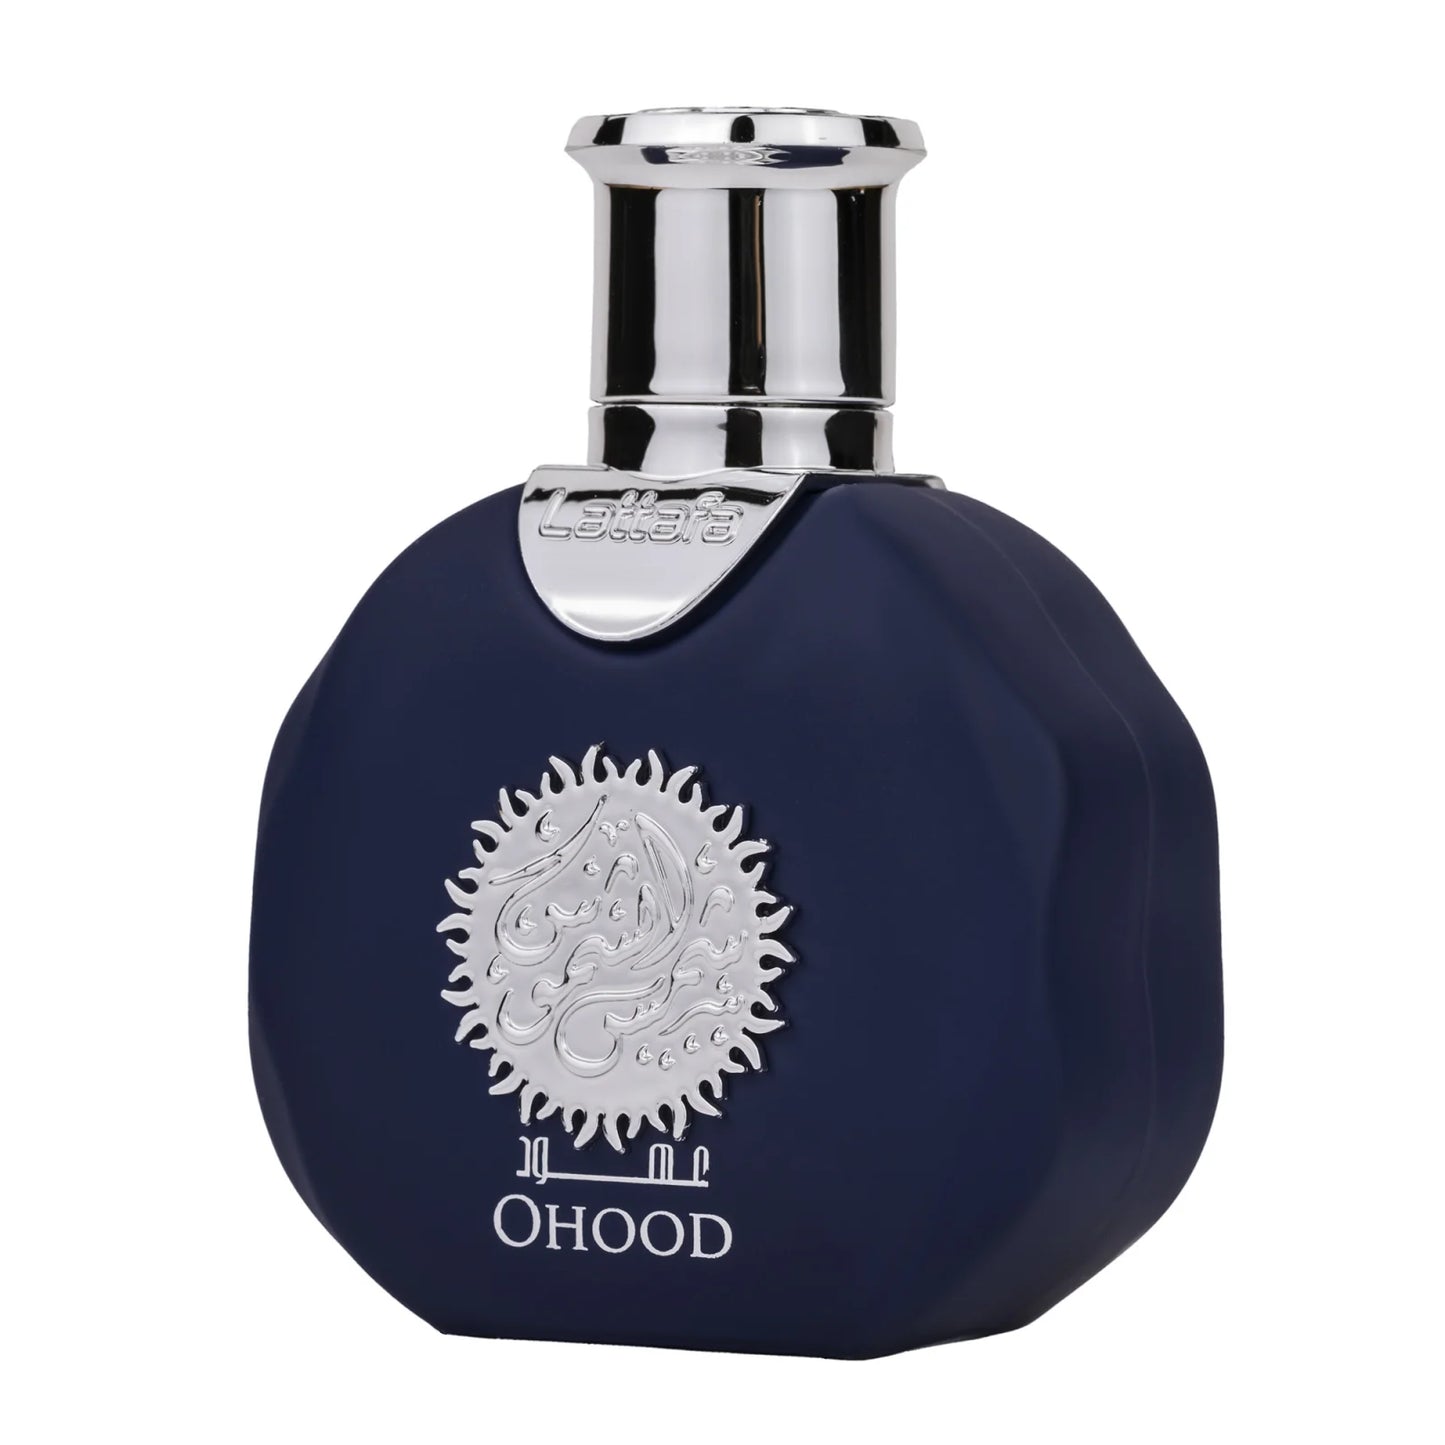 Parfum arabesc Lattafa Shams Al Shamoos Ohood, apa de parfum 35 ml, barbat